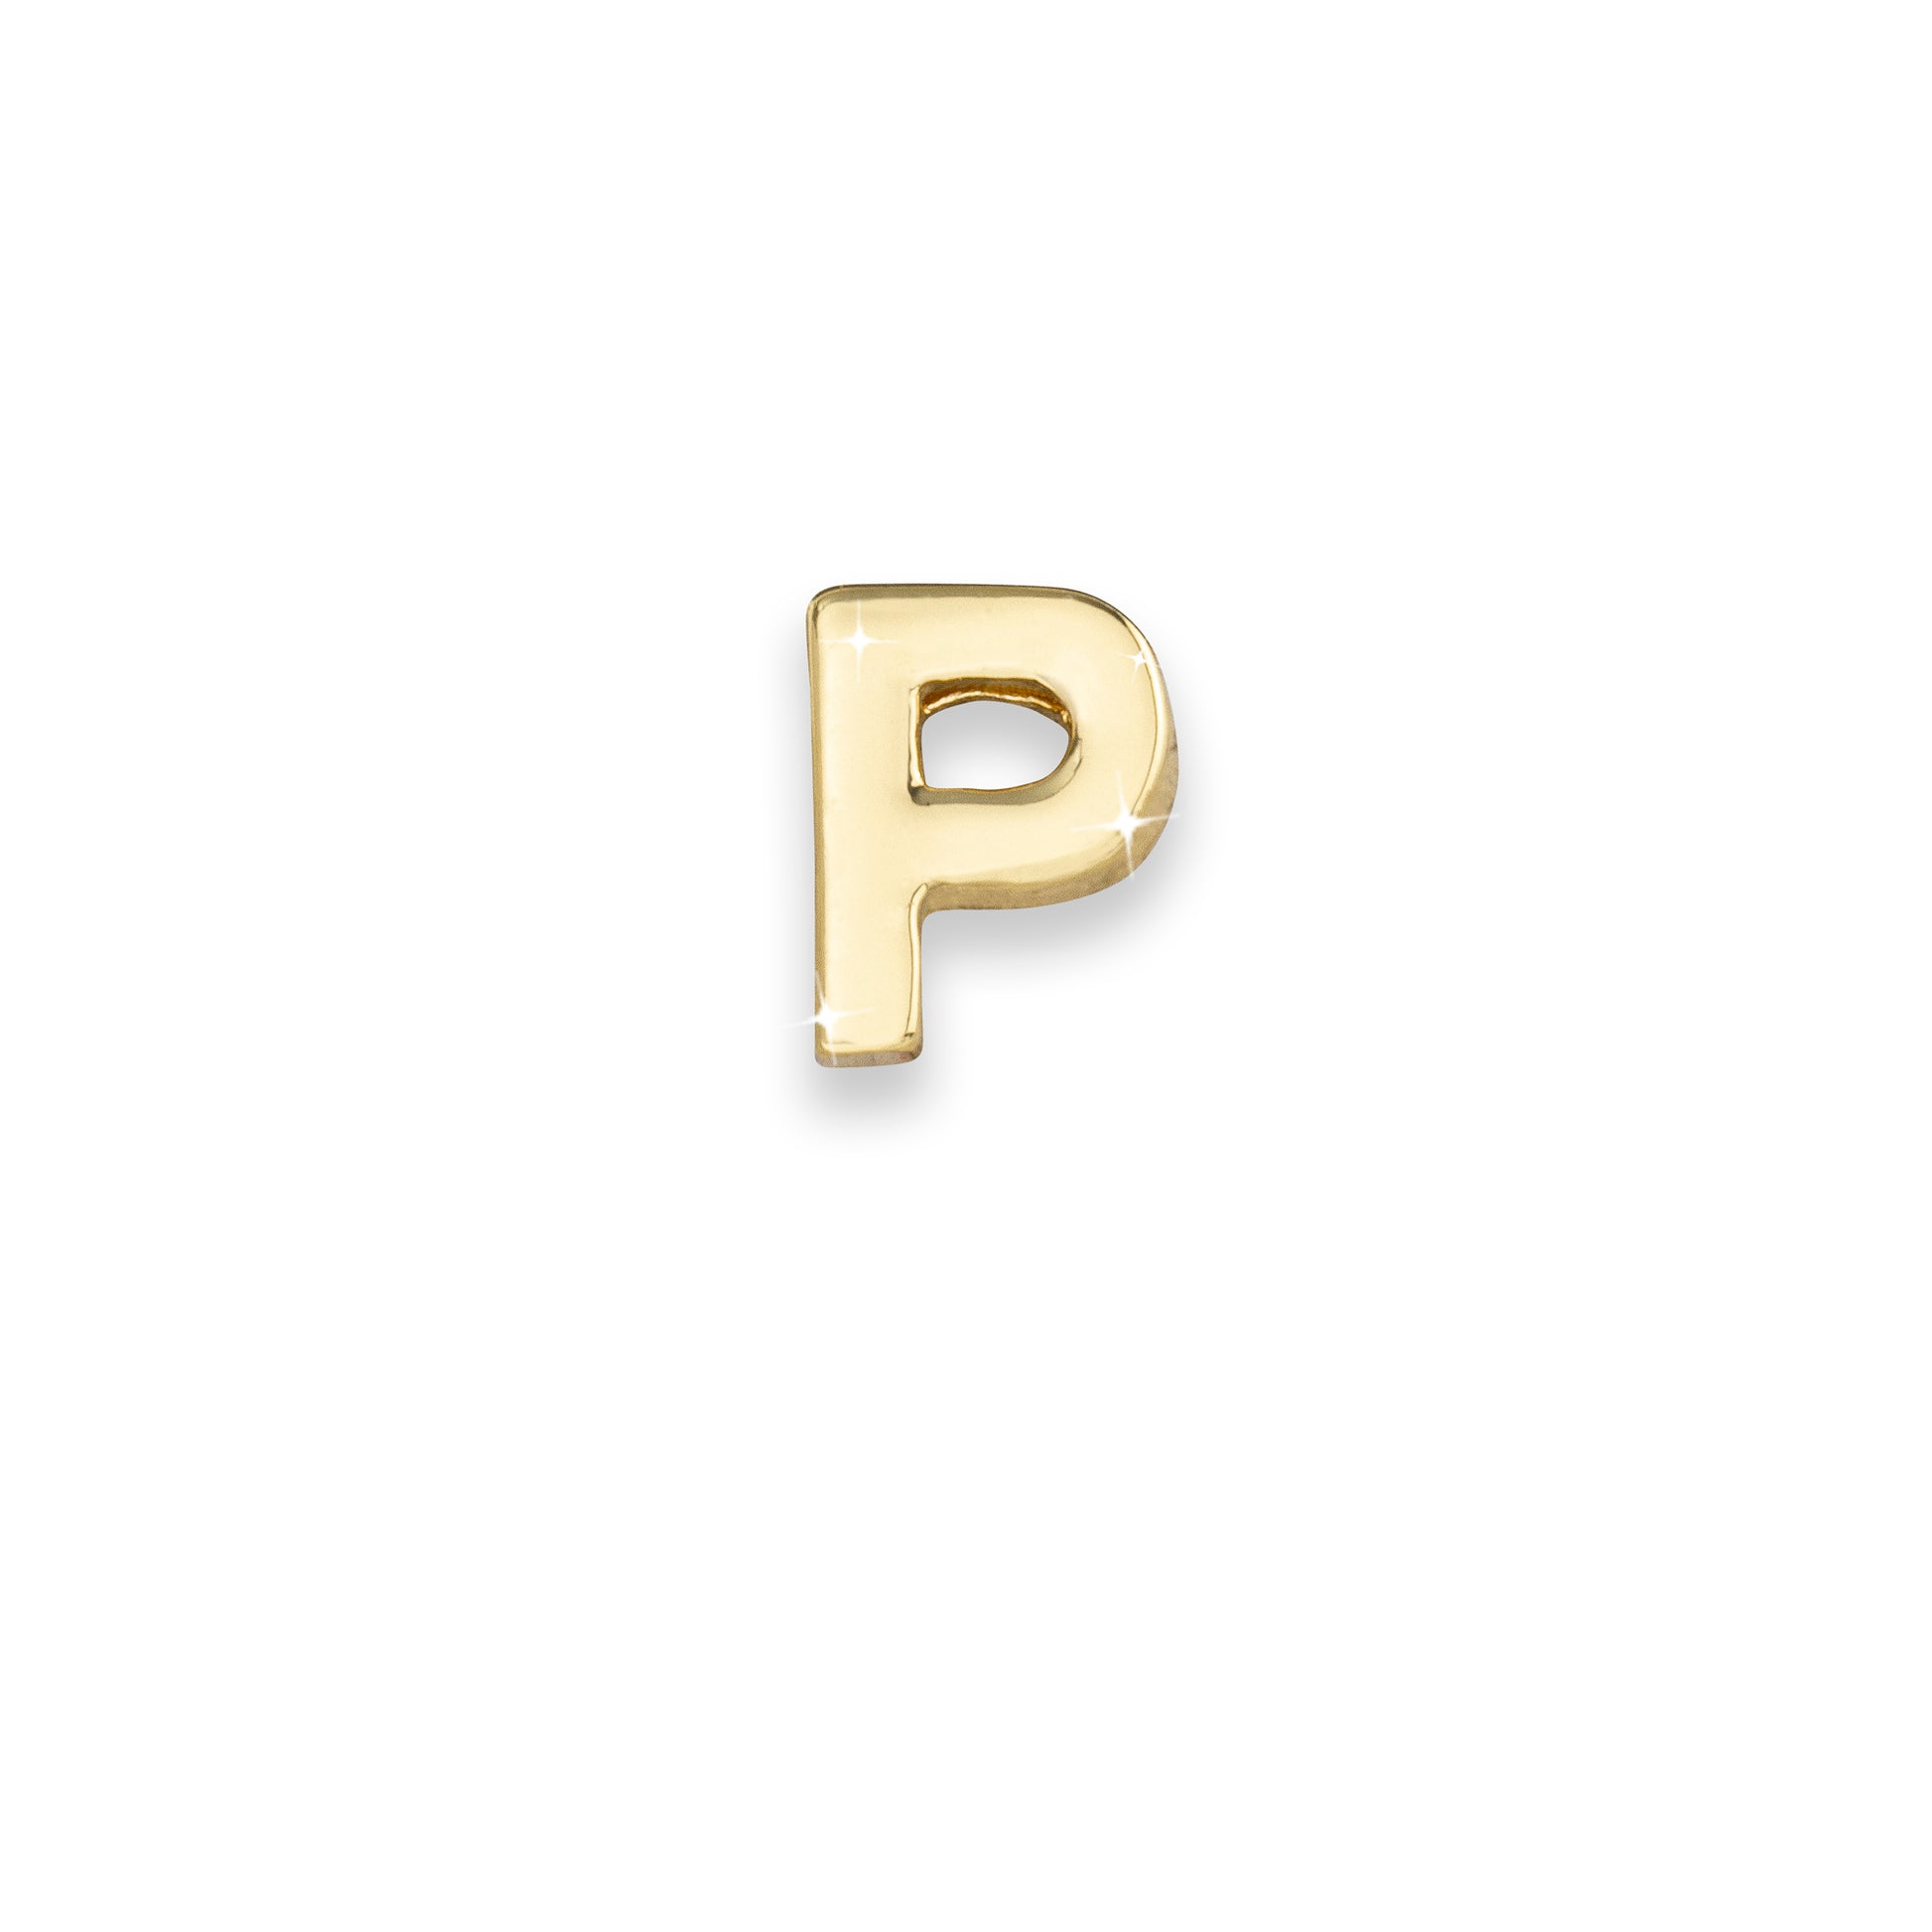 Gold letter P monogram charm for necklaces & bracelets